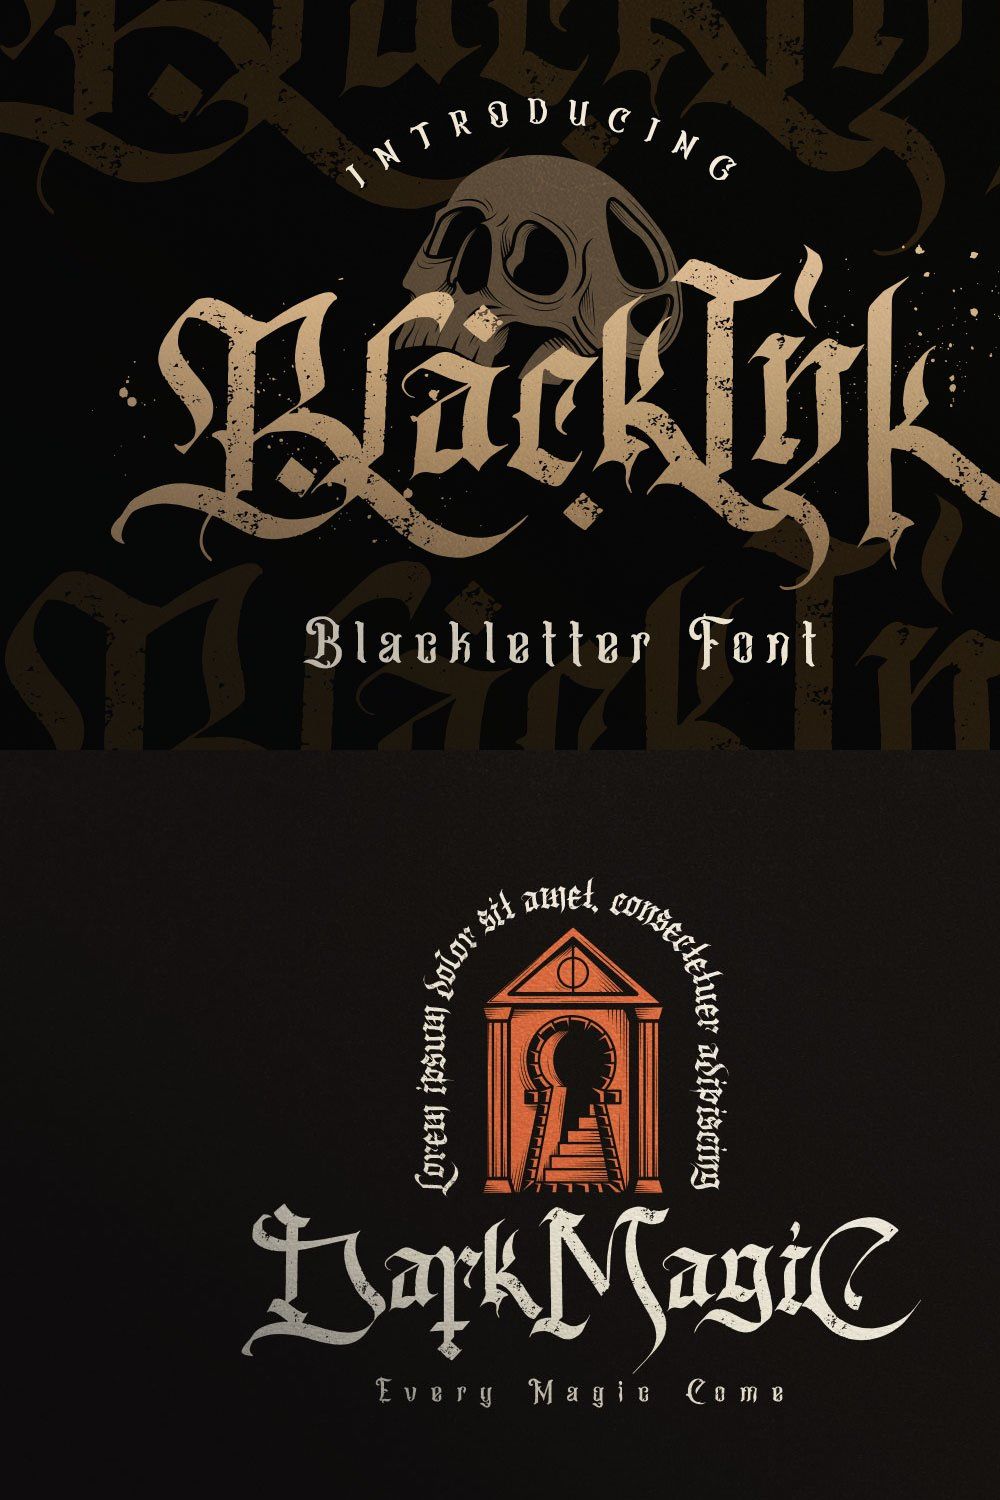 Blackink - Blackletter Font pinterest preview image.